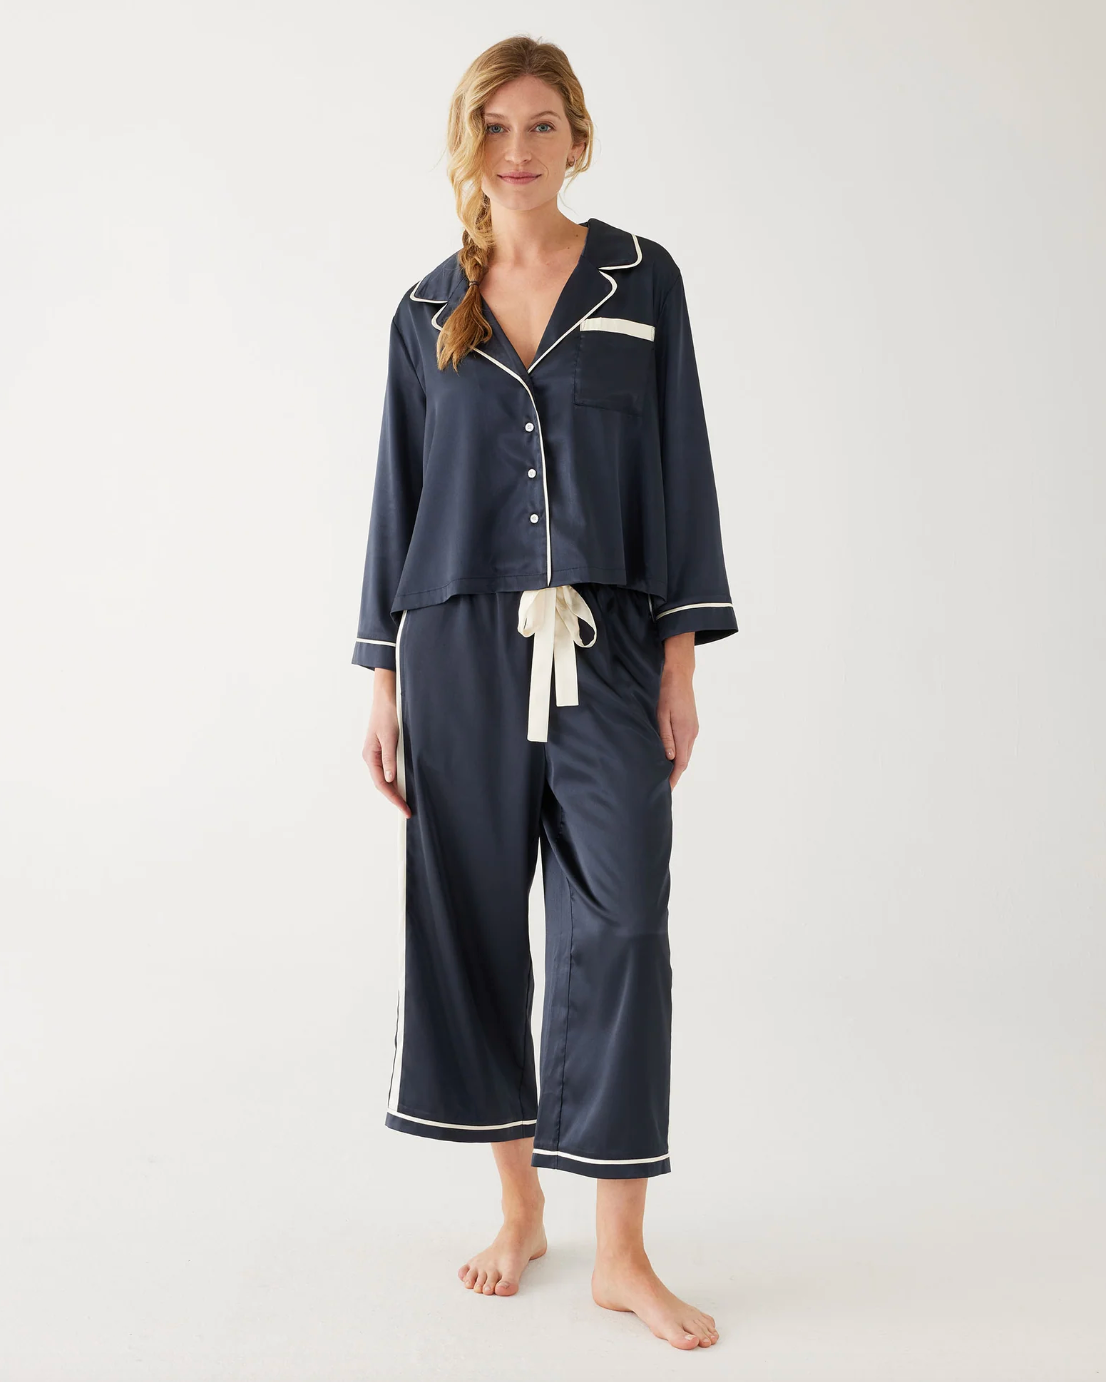 Mersea Satin Sailors Pajama Set